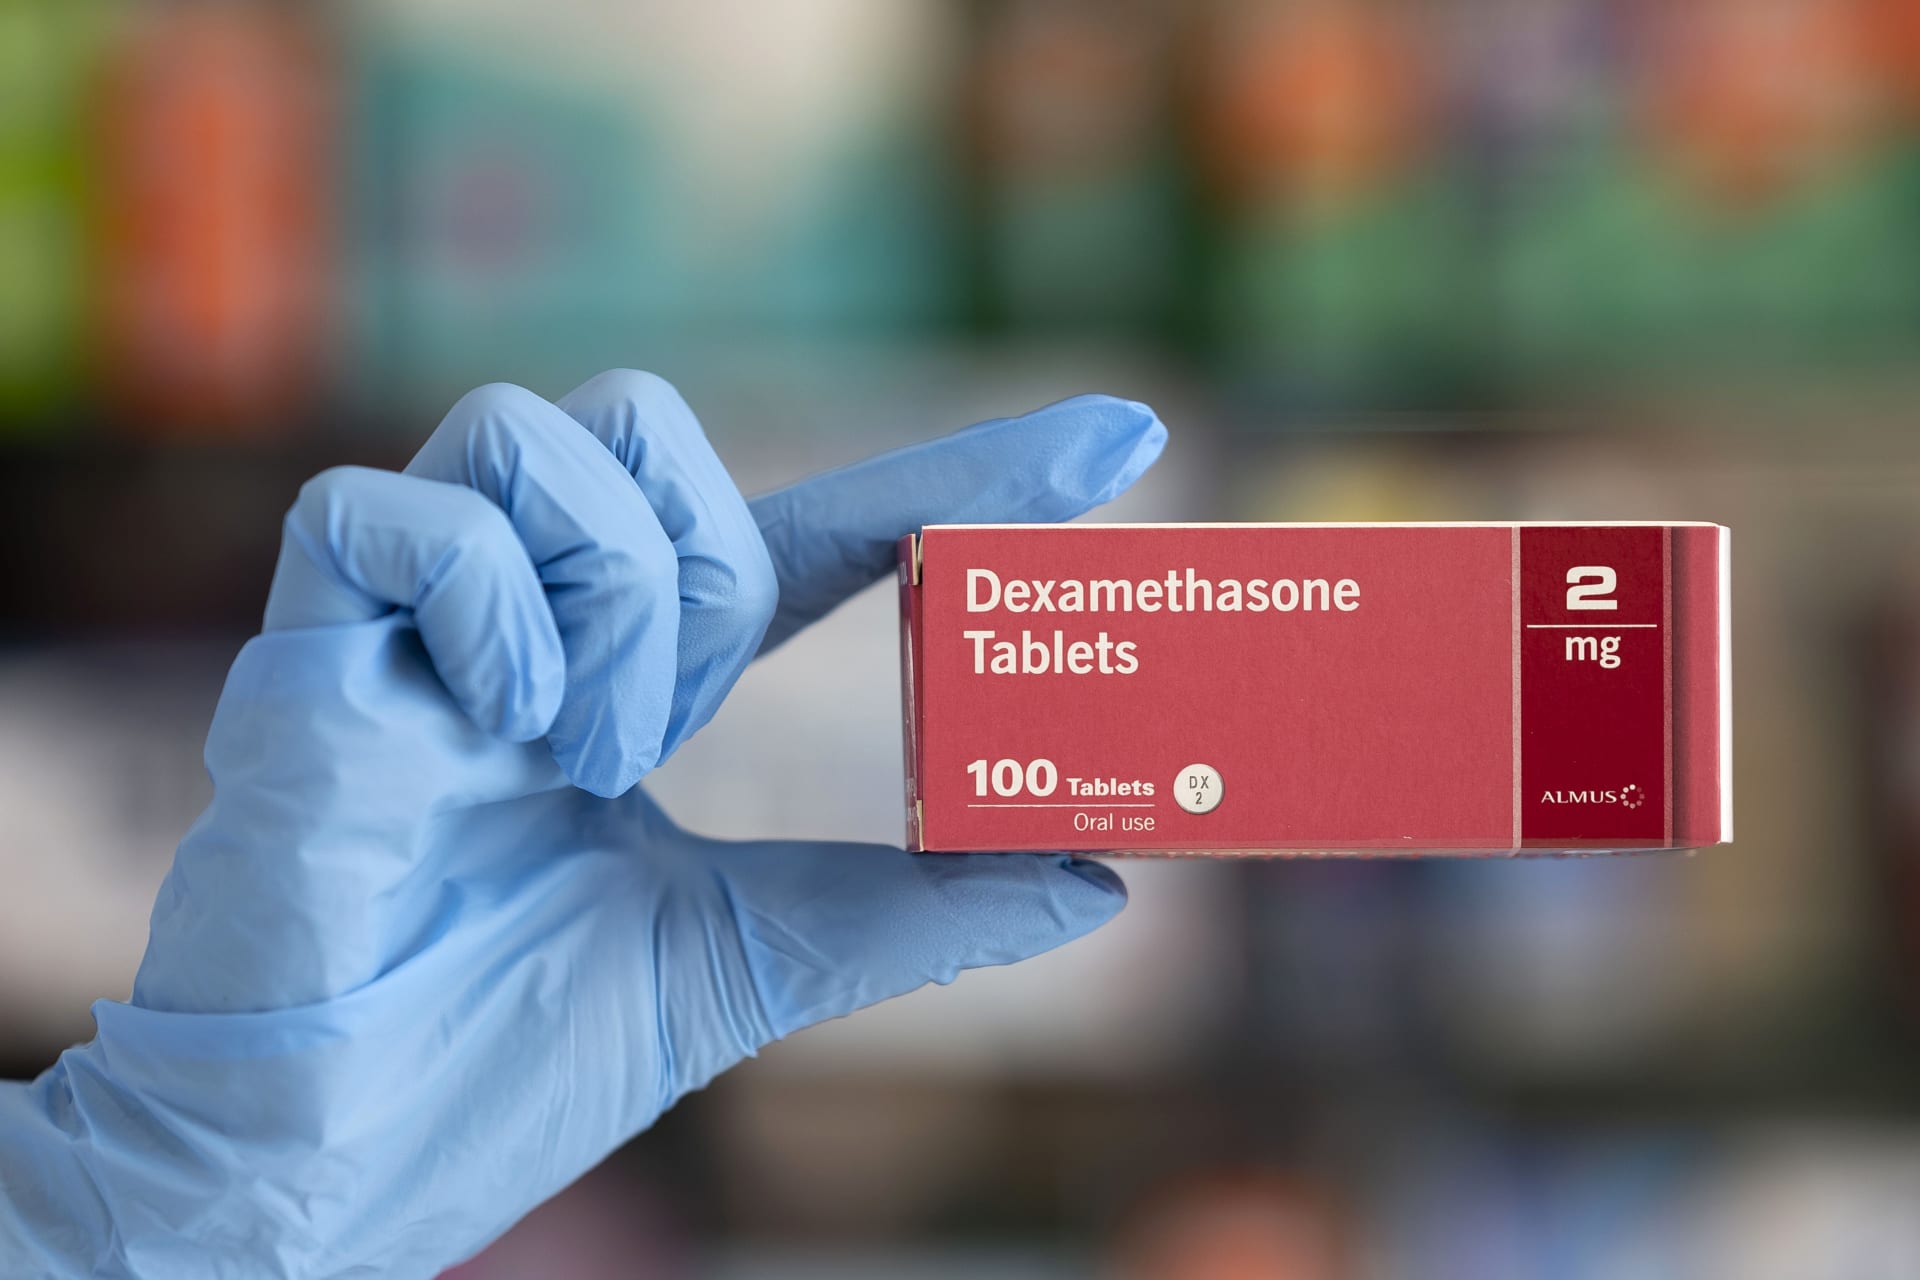 هيئة الدواء المصرية عن استخدام "ديكساميثازون" في علاج مرضى كورونا: له أضرار خطيرة